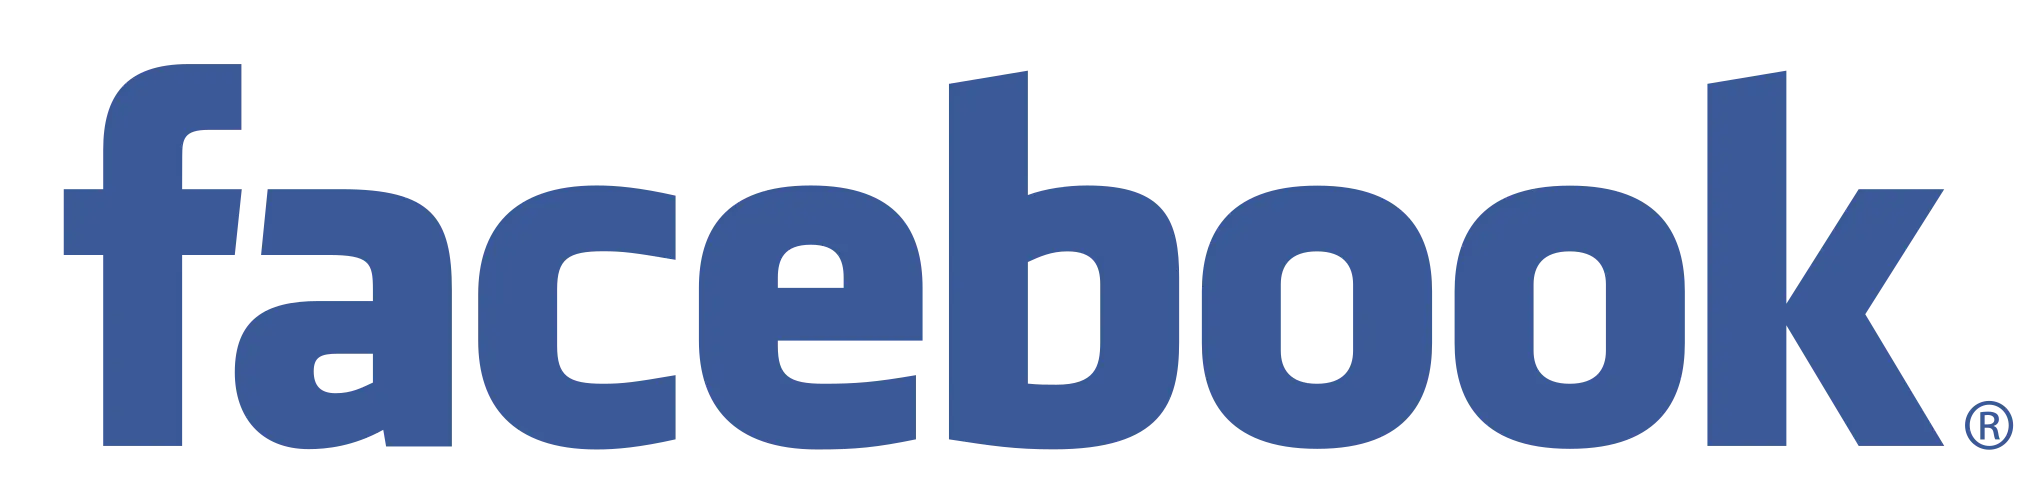 facebook.com lists vacancies for rentals